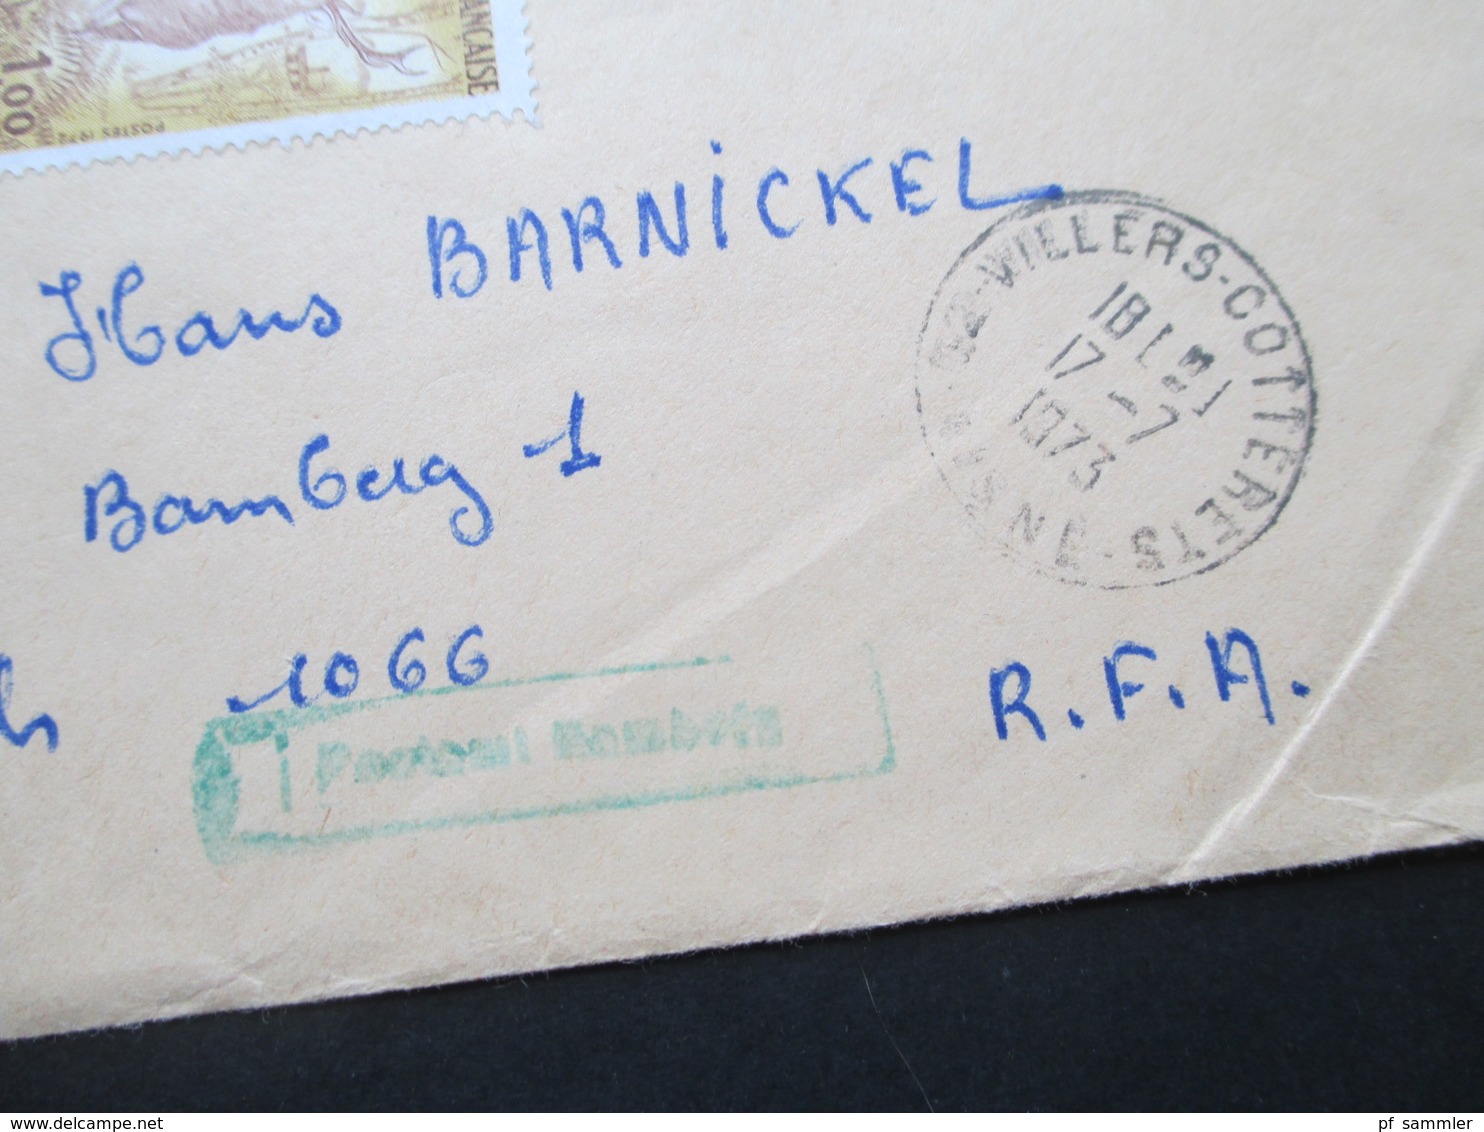 Frankreich 1973 Einschreiben / R-Brief R-Zettel Gestempelt Villers - Cotterets Mit Zollaufkleber Douane Nach Bamberg - Lettres & Documents